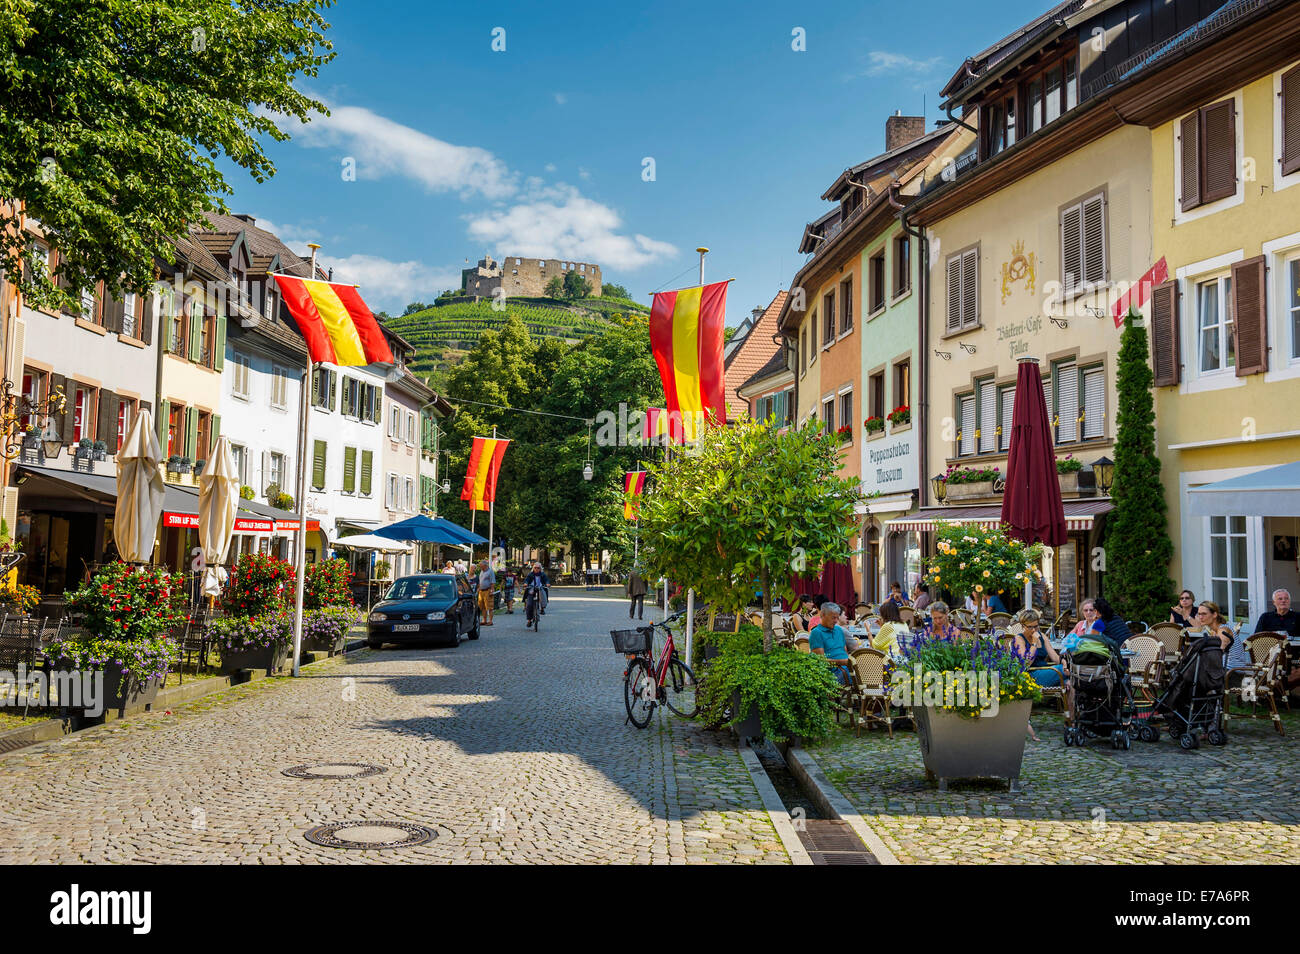 Pedestrian zone and restaurants, Staufen im Breisgau, Markgräflerland, Black Forest, Baden-Württemberg, Germany Stock Photo